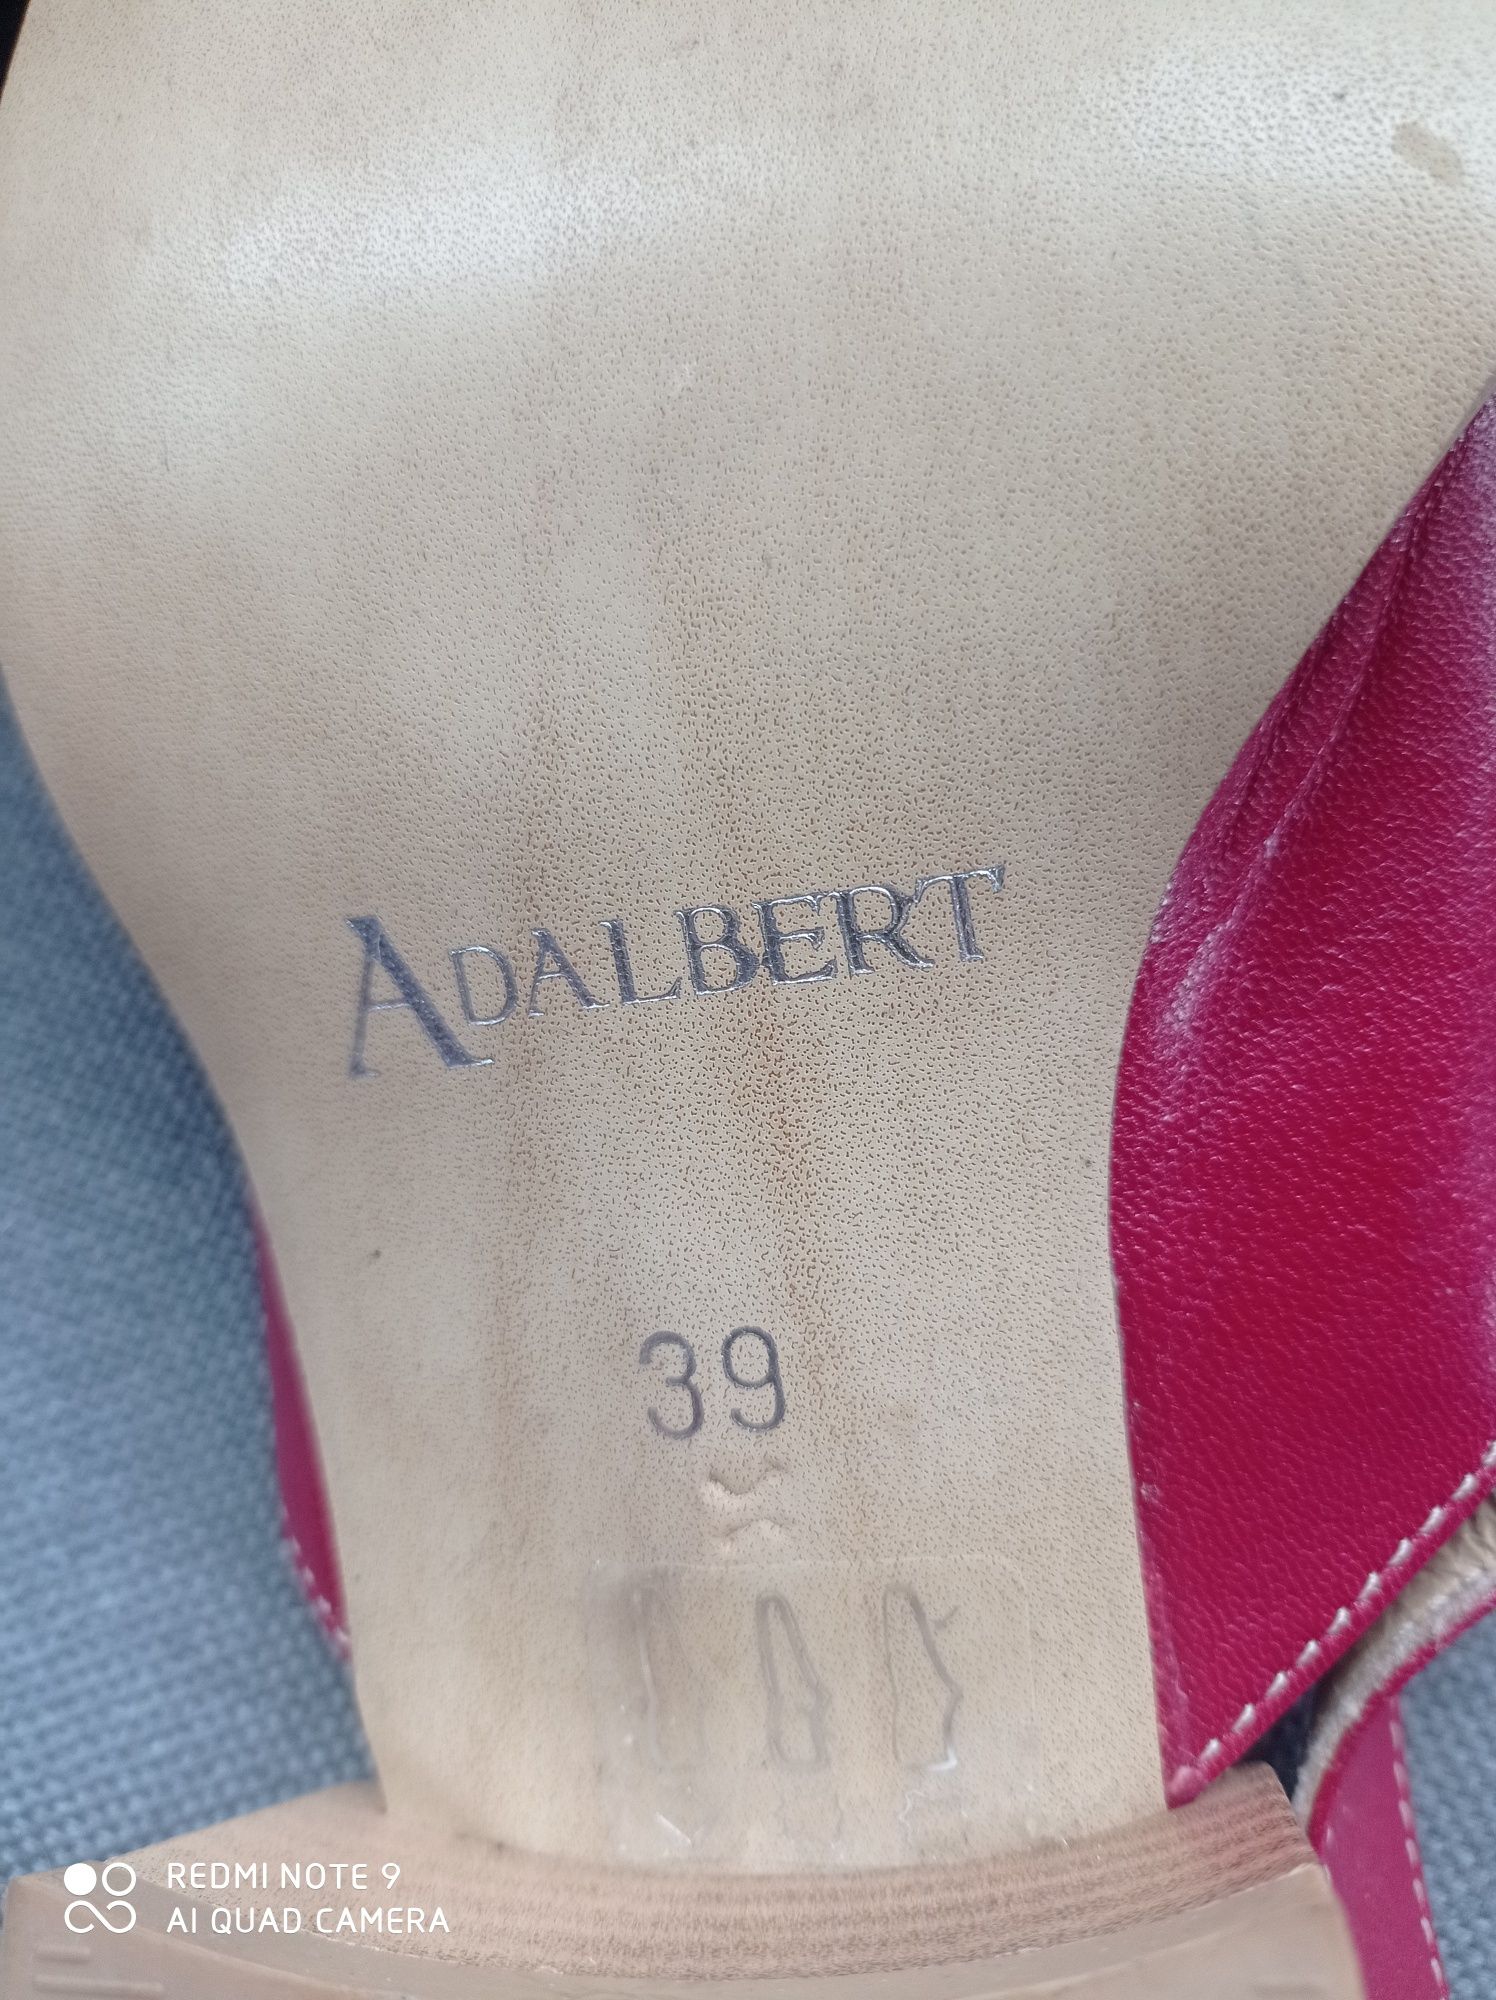 Buty, Sandały 39 firmy Adalbert